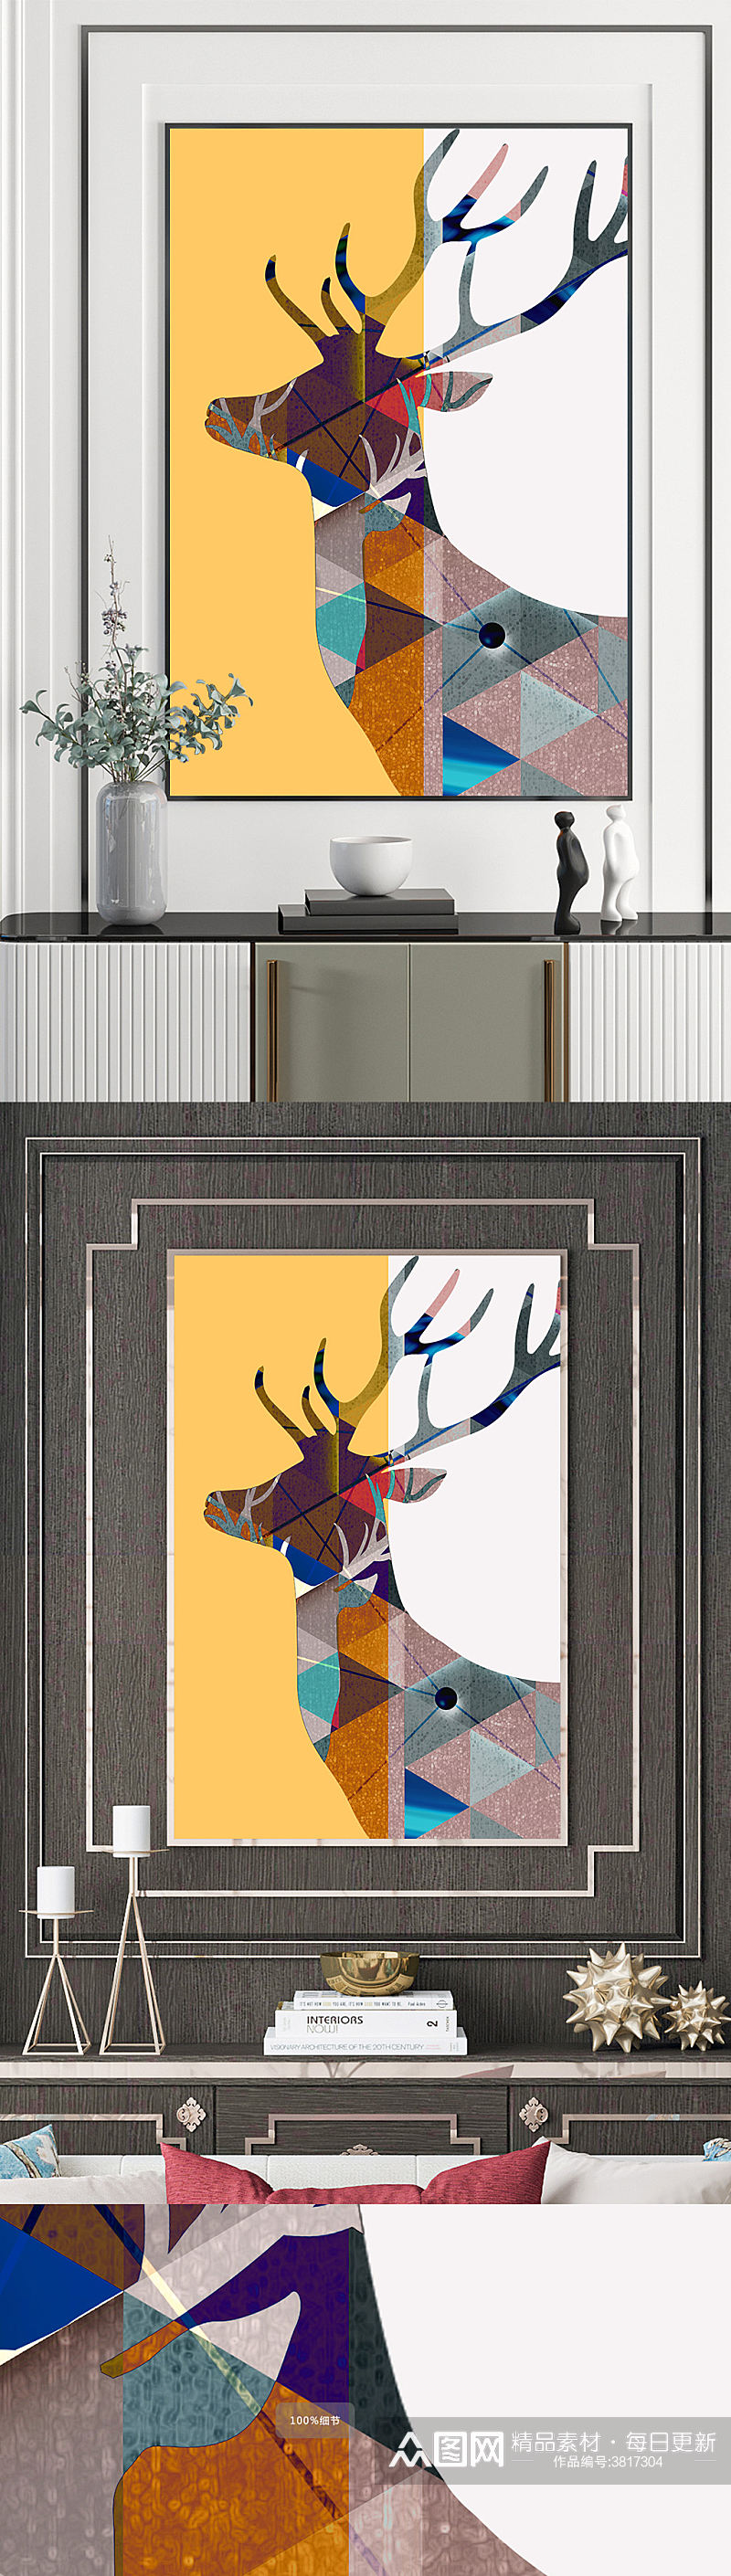 抽象麋鹿几何装饰画素材